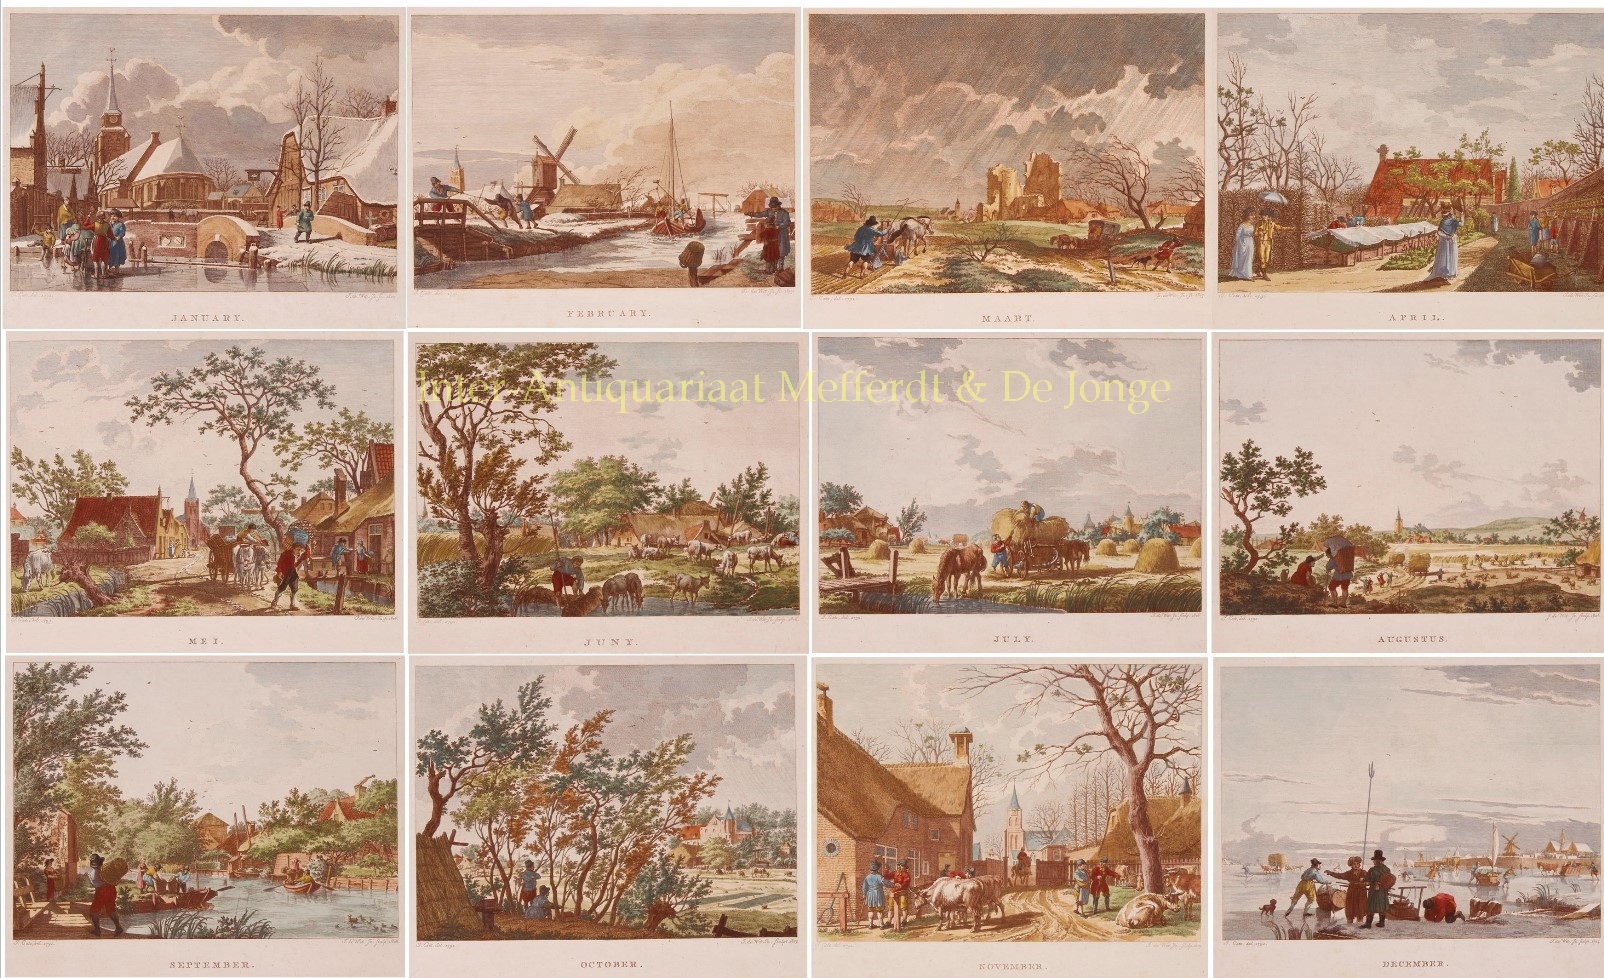 Cats-- Jacob (1741 - 1799) - The Twelve Months - Izaak de Wit Jansz. after Jacob Cats, 1805-1807